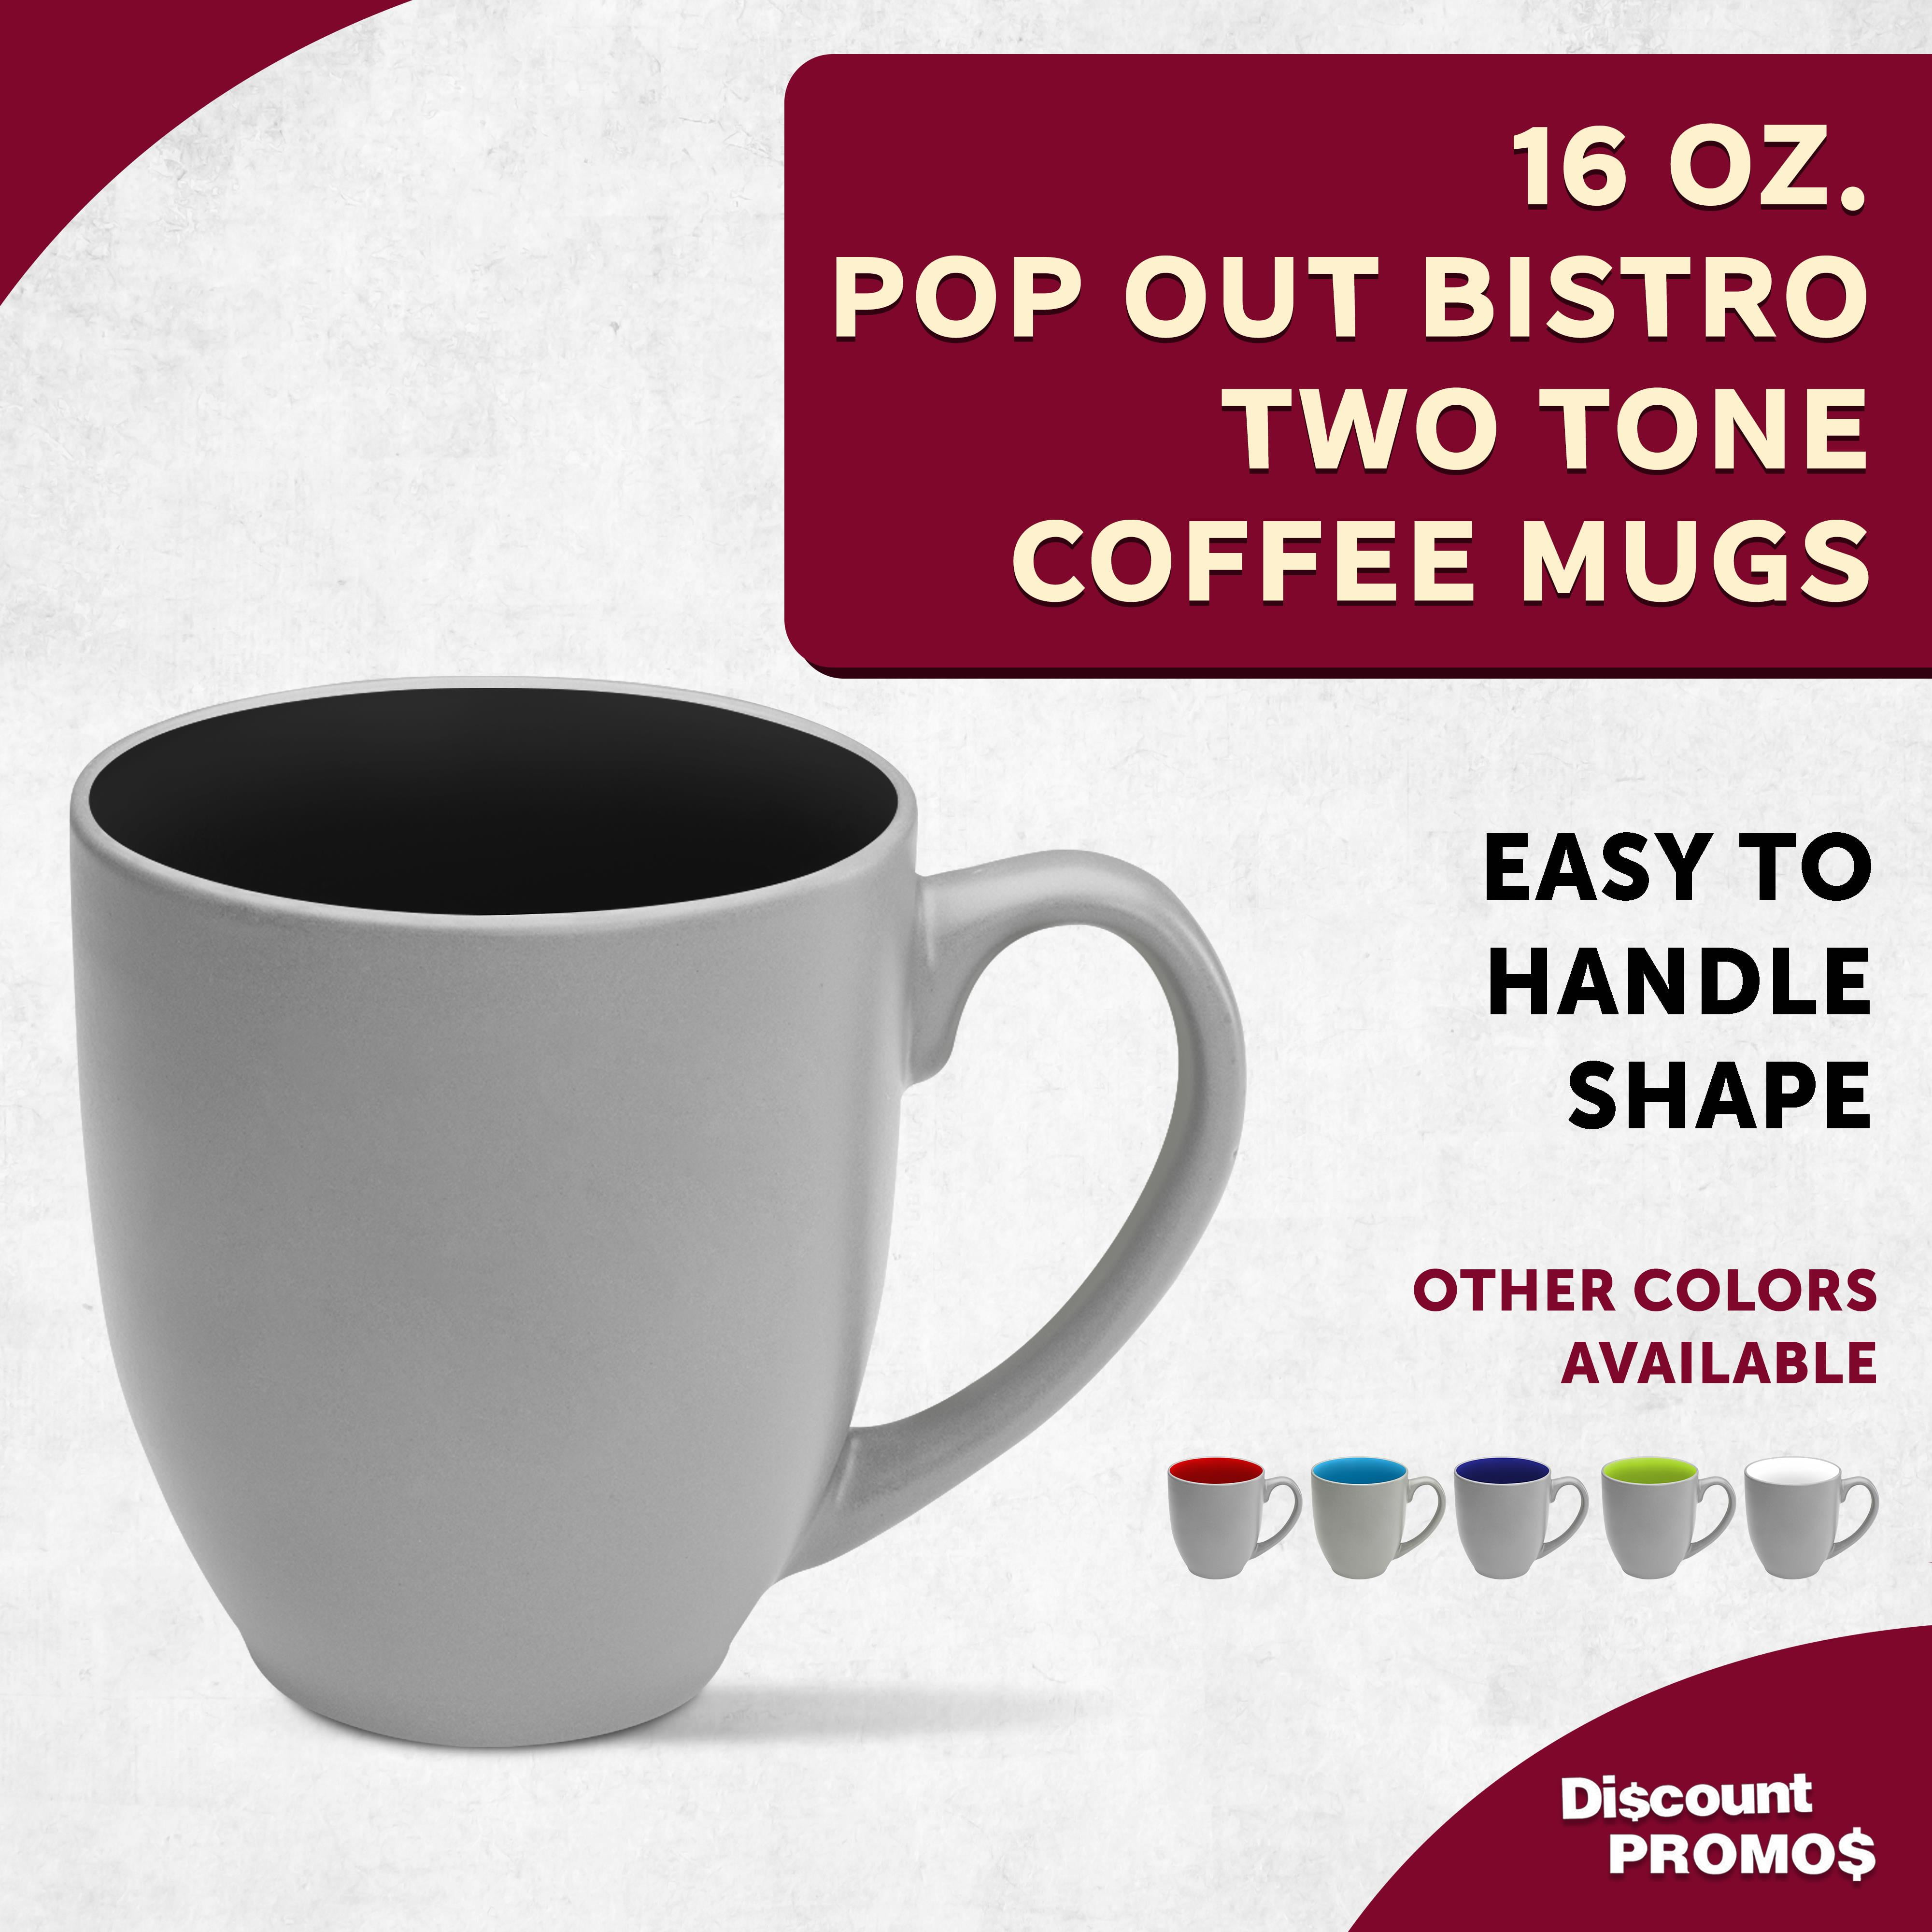 Two-tone Mug and Saucer